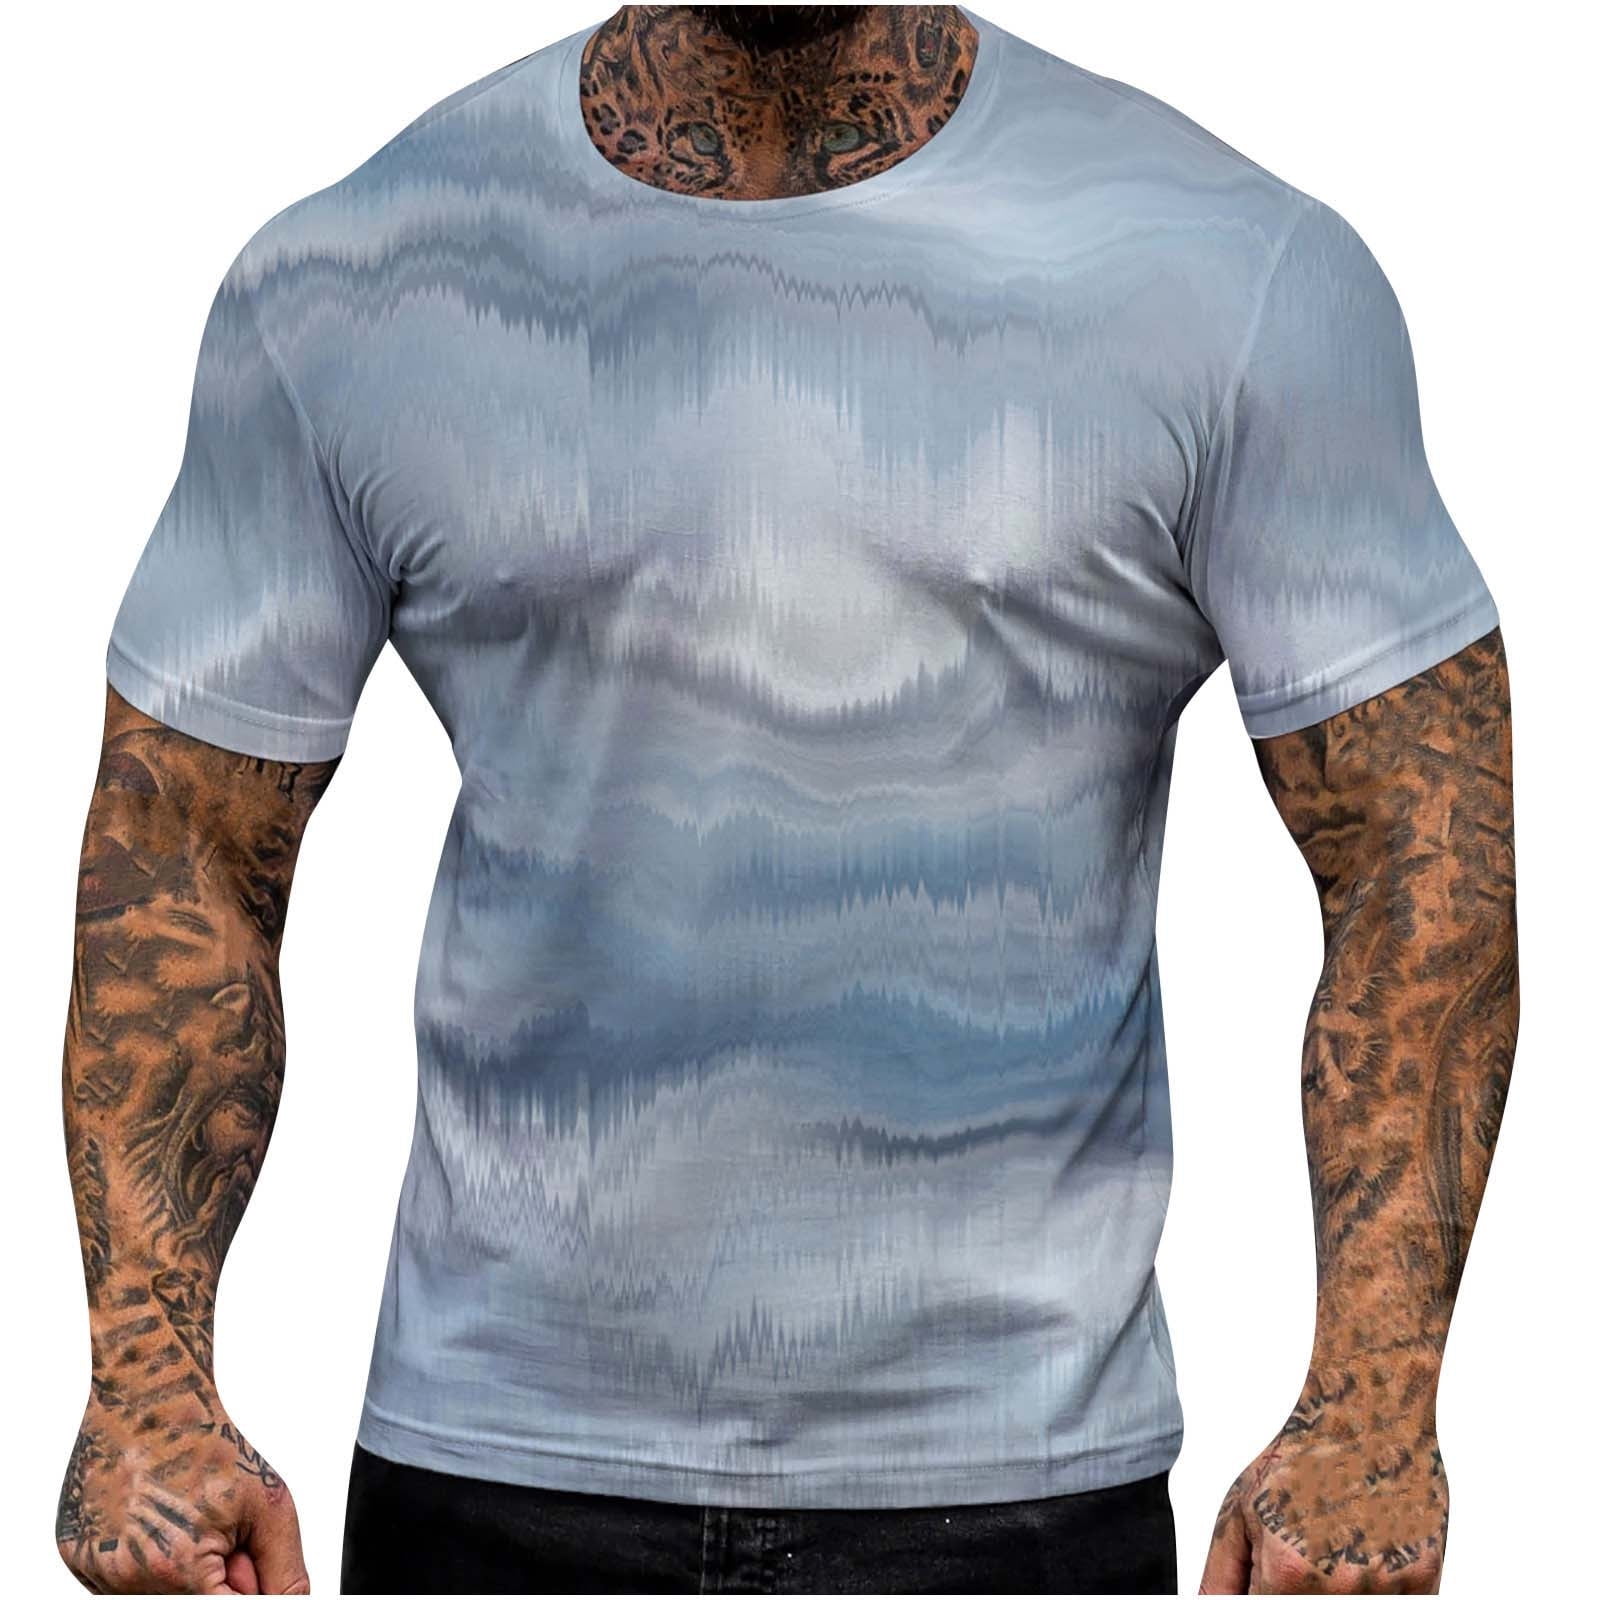 VSSSJ Mens Sports Beach Crew Neck Top T-Shirt Big and Tall Digital